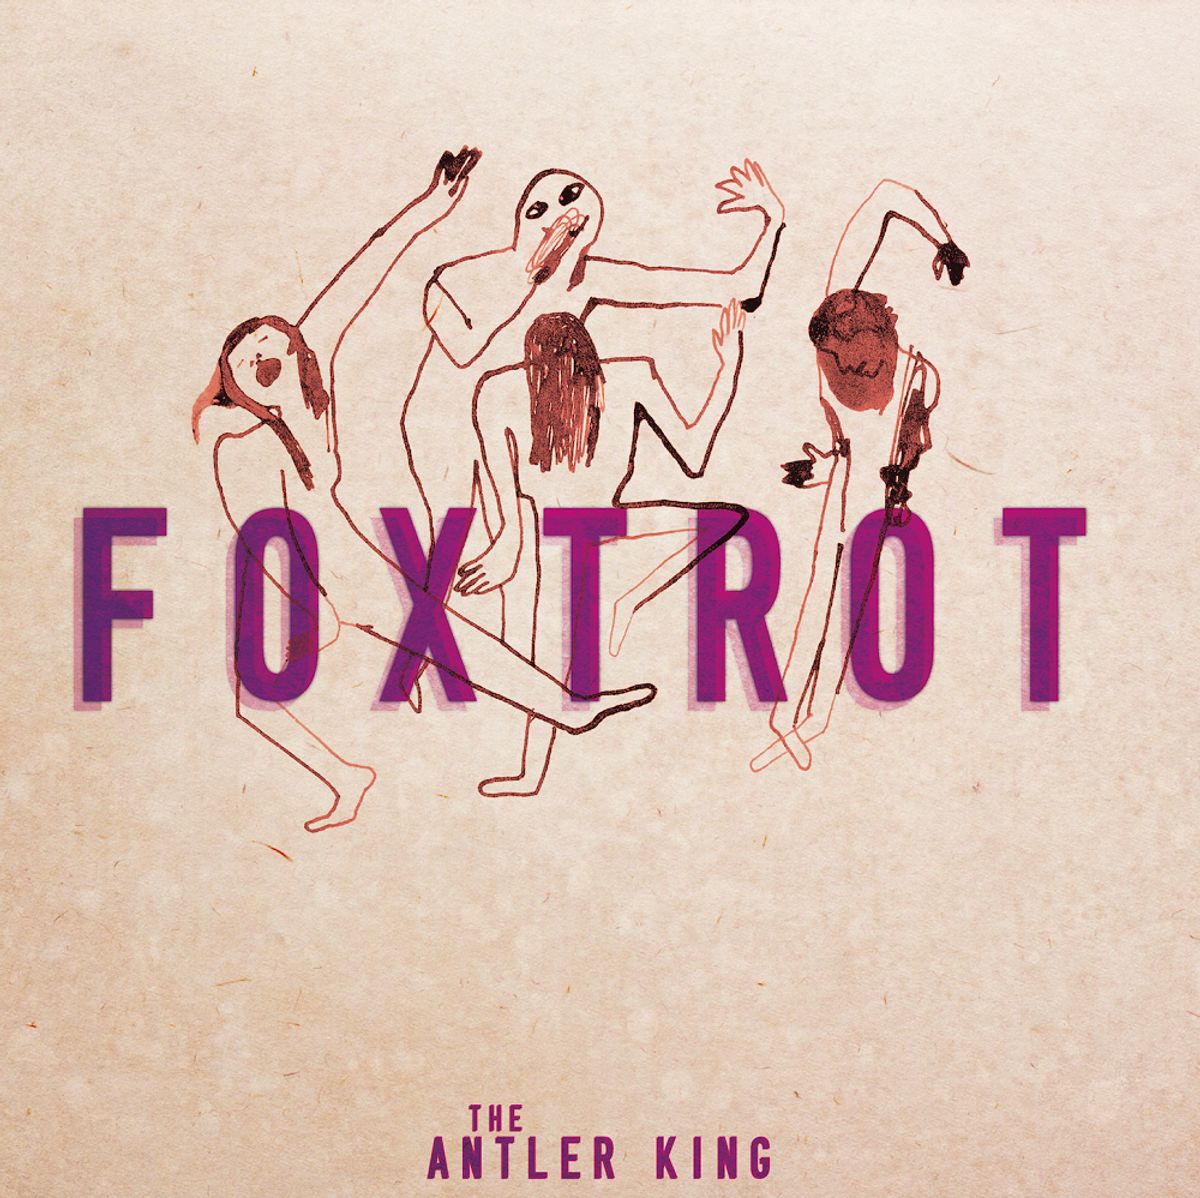 The Antler King - Foxtrot